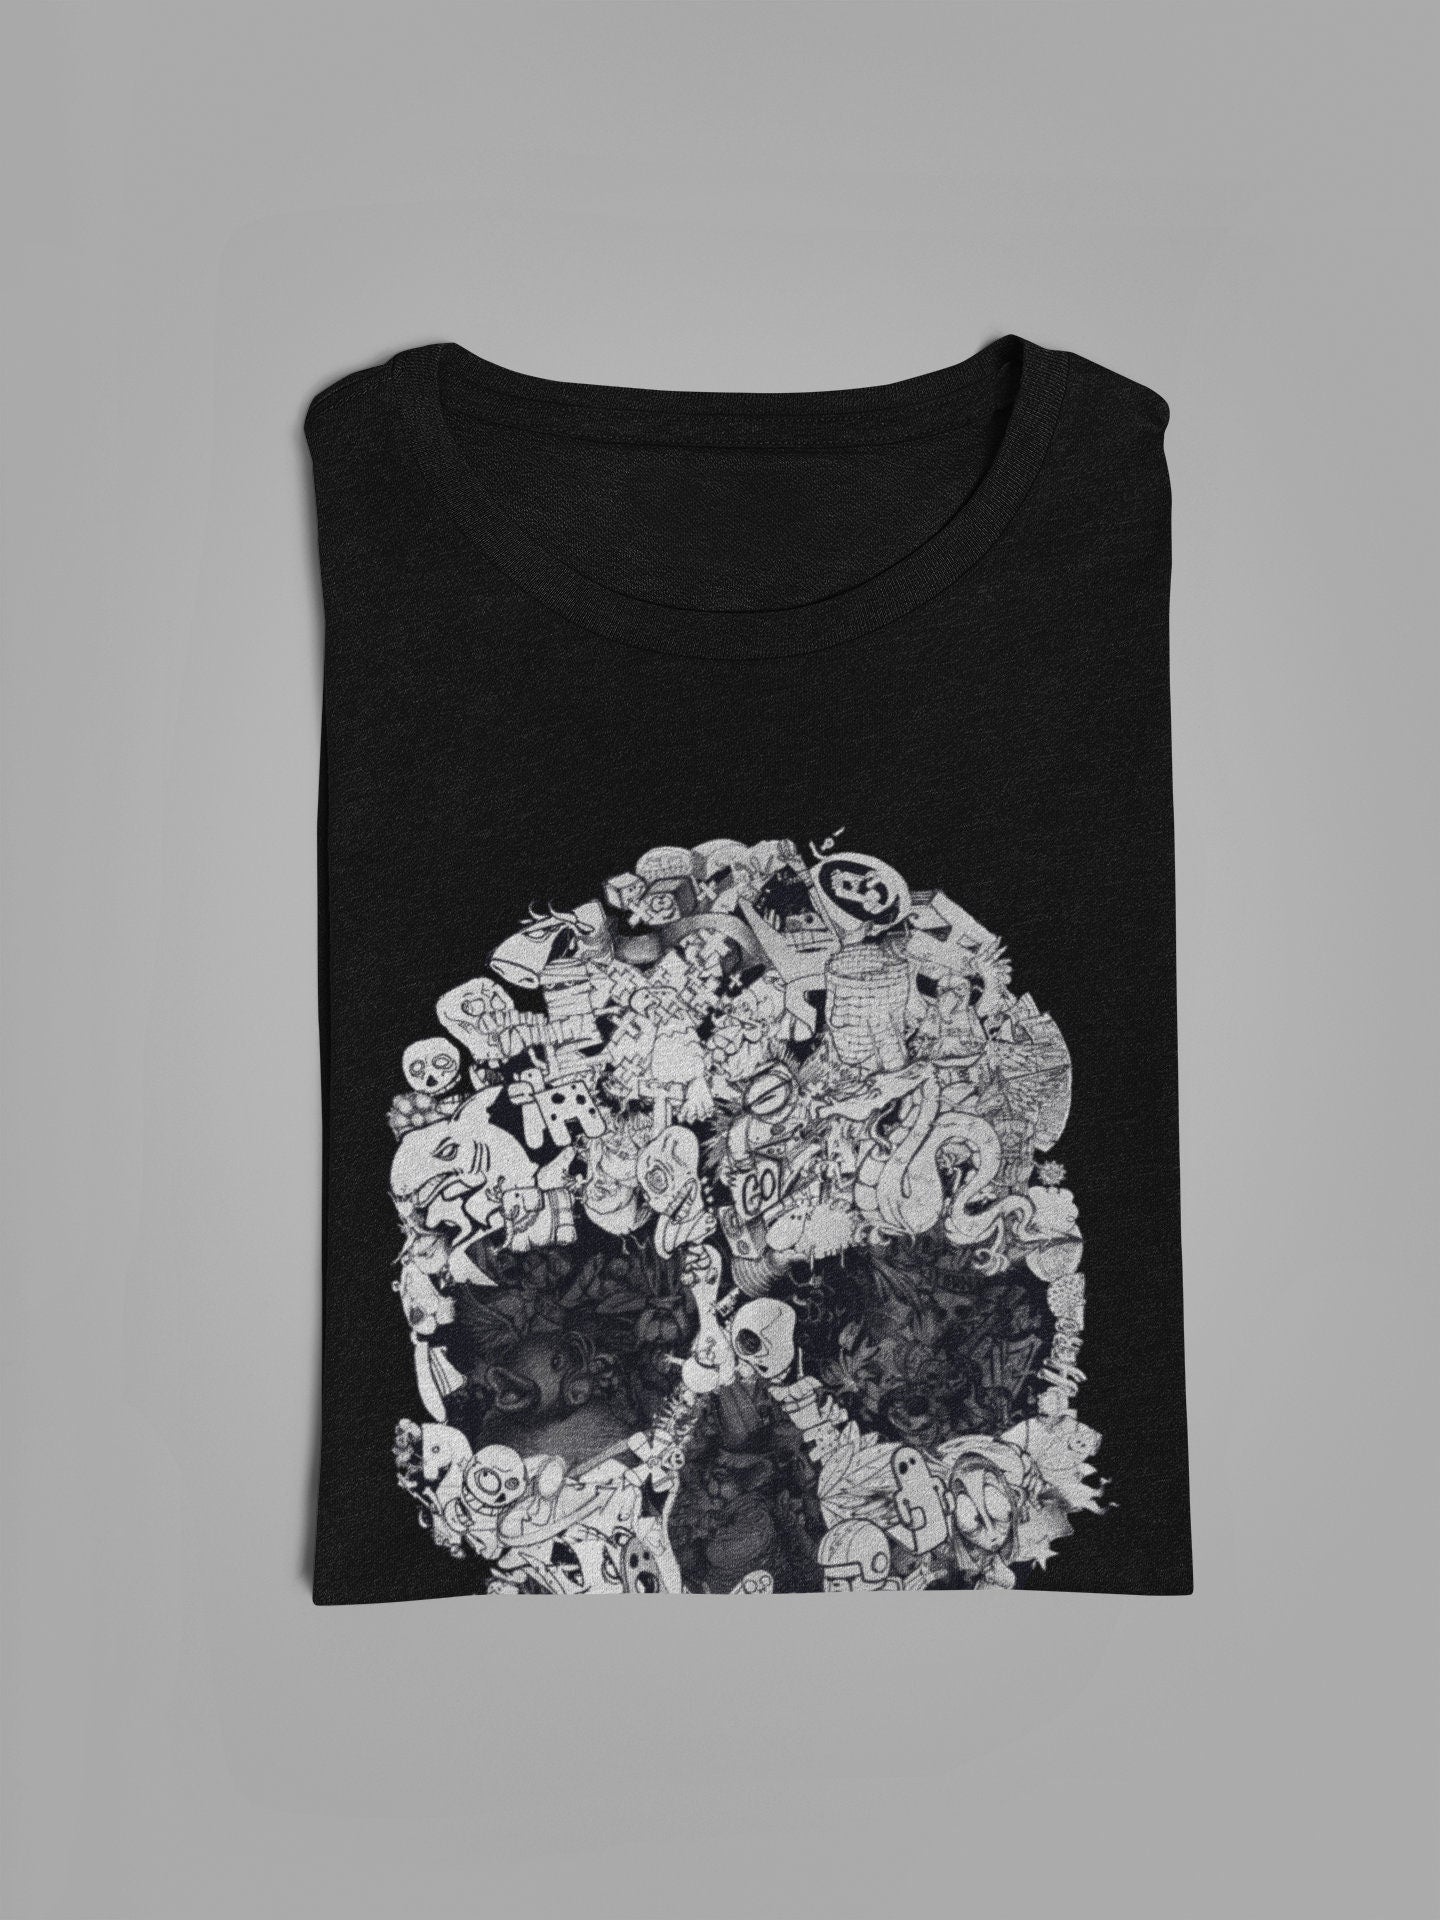 Doodle Skull Men's T-shirt, Skull Art Print Mens Tshirt, Black And White Mens Graphic Tees, Skull Print Gift For Him